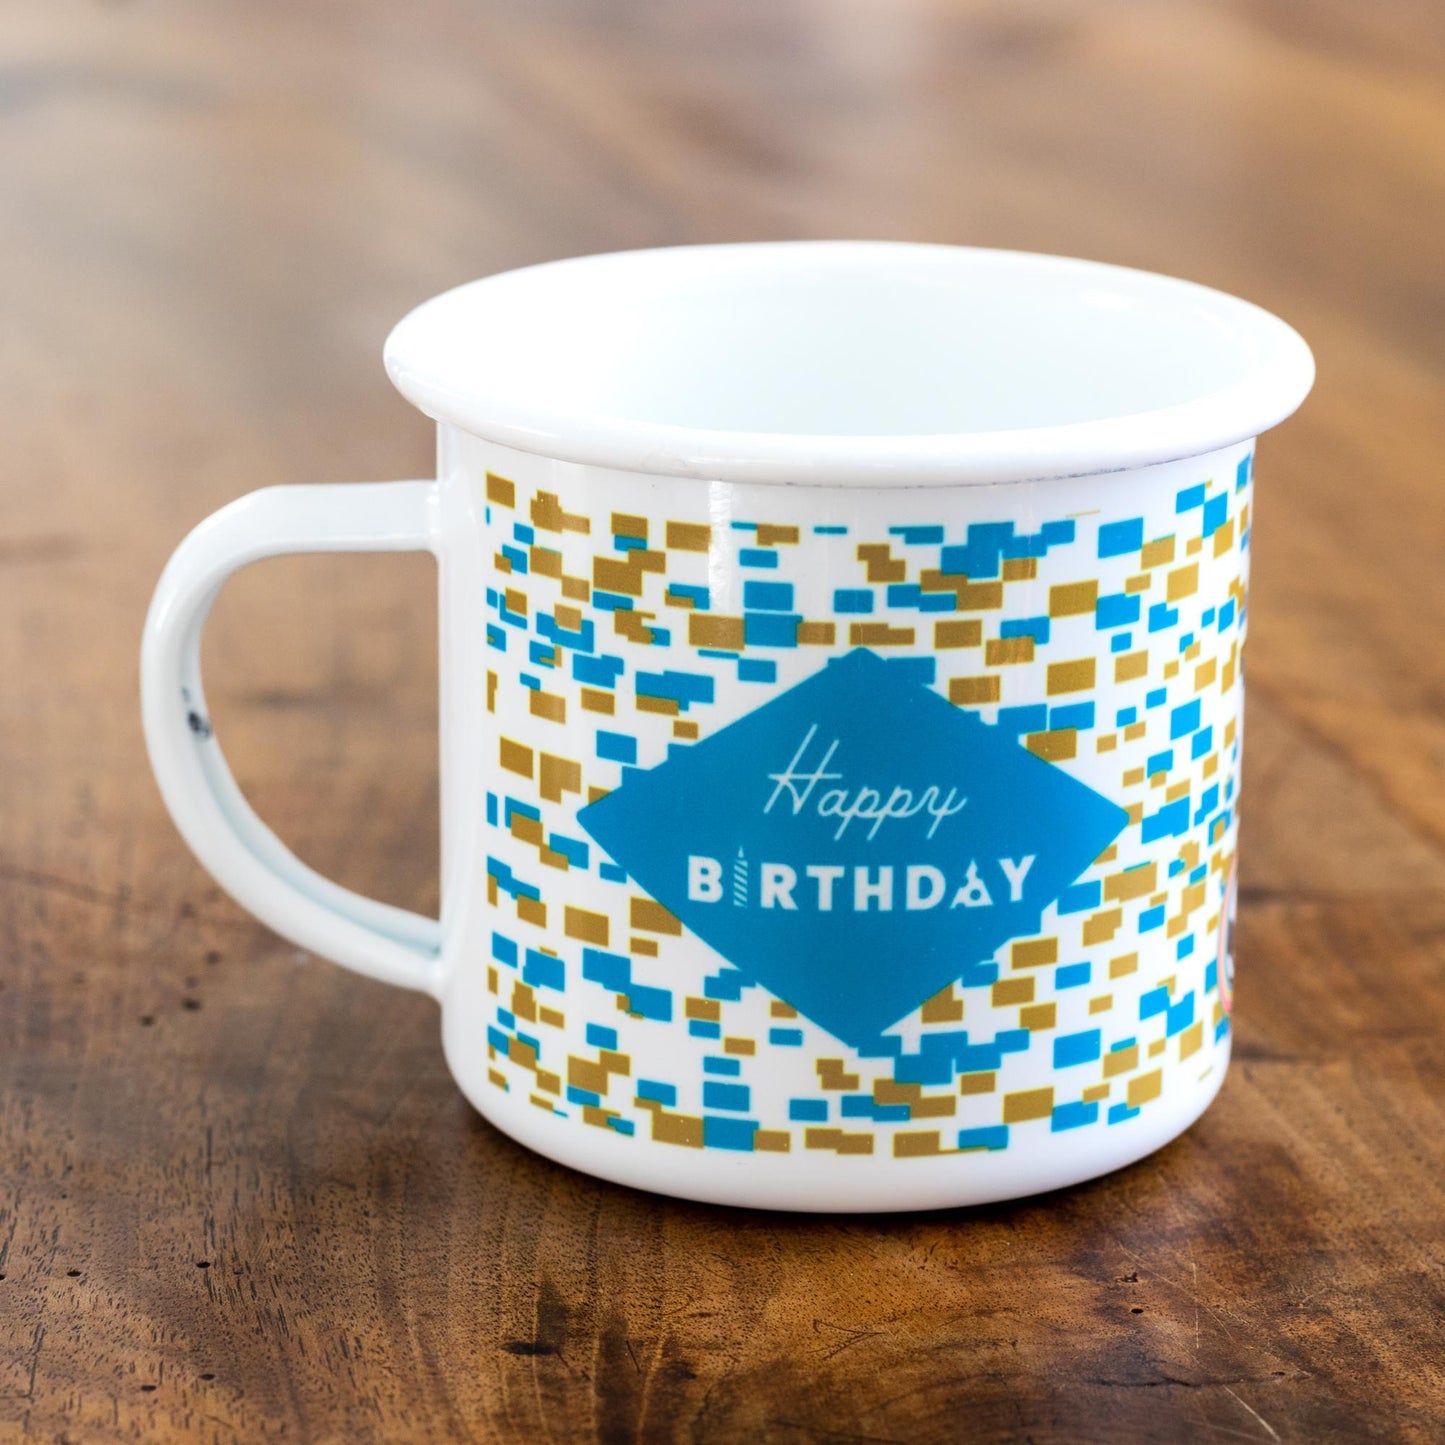 Happy Birthday Enamel Mug with Blue Confetti